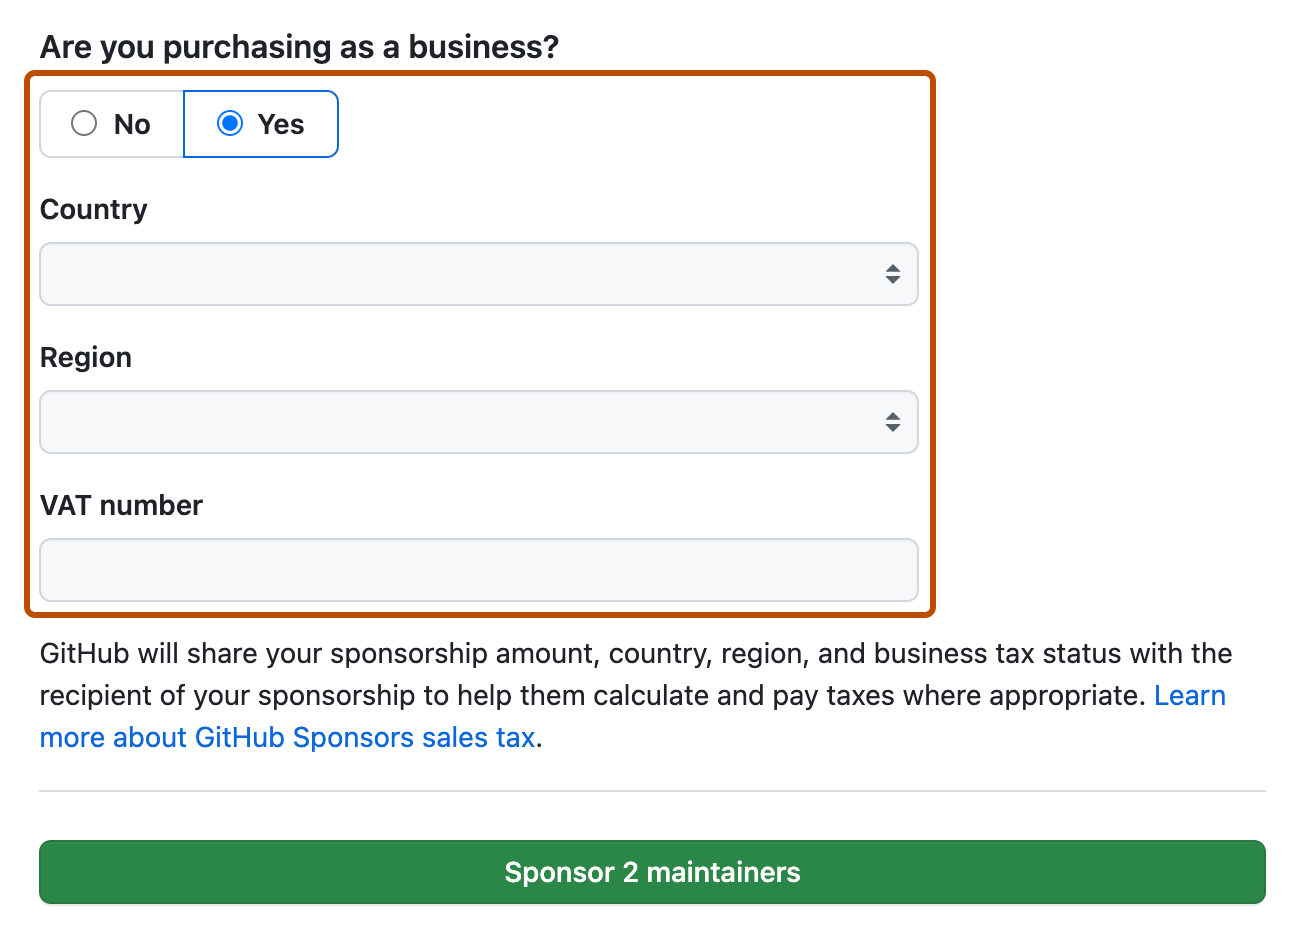 Captura de pantalla de la página de comprobación de patrocinio. Los campos para patrocinar como negocio están resaltados en naranja oscuro.